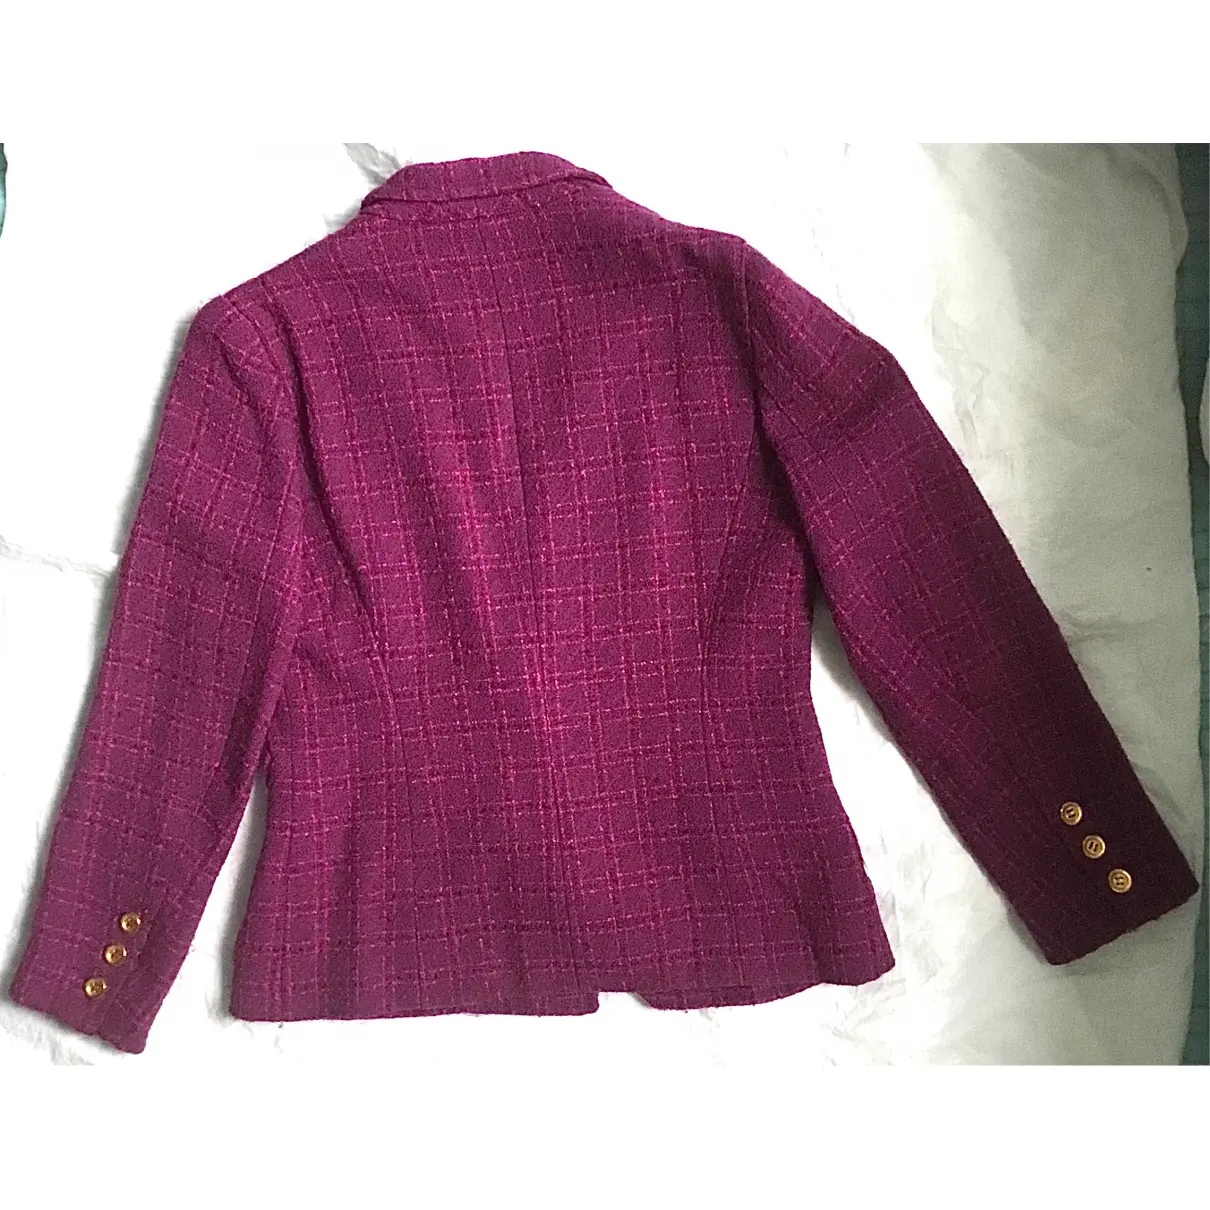 Buy Sonia Rykiel Tweed suit jacket online